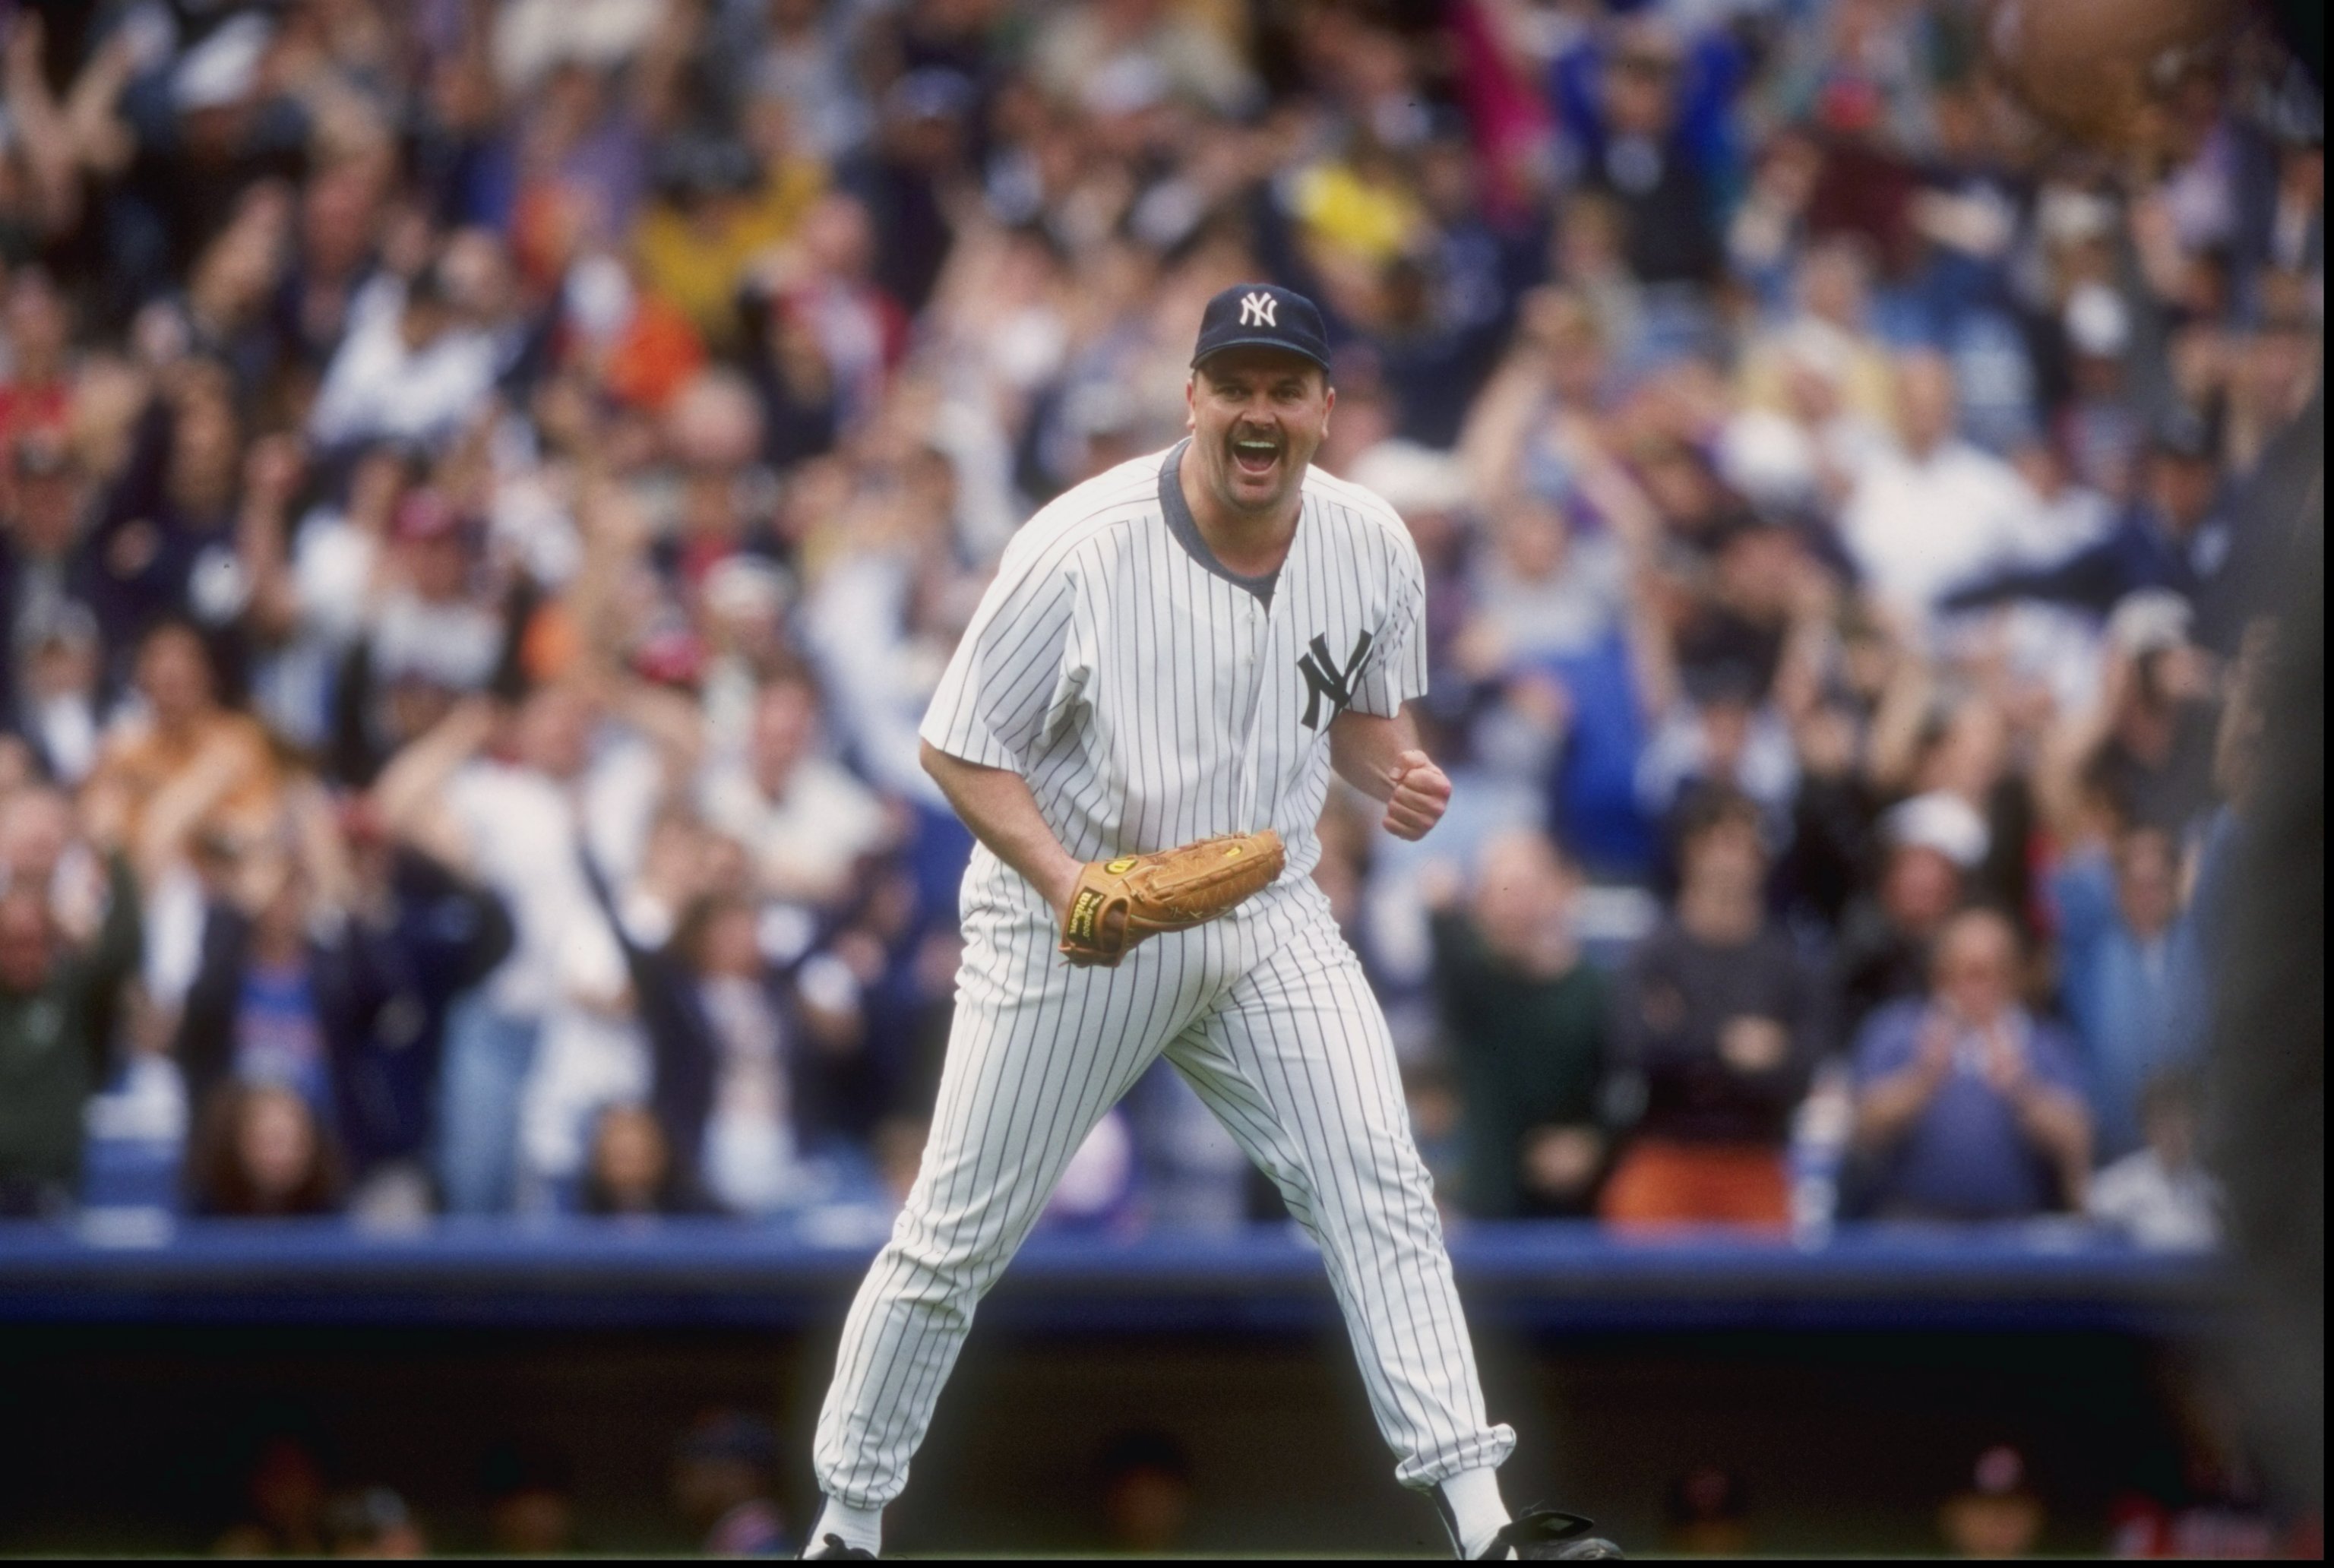 1999 New York Yankees Jeter Williams Knoblauch Martinez Baseball T-Shirt